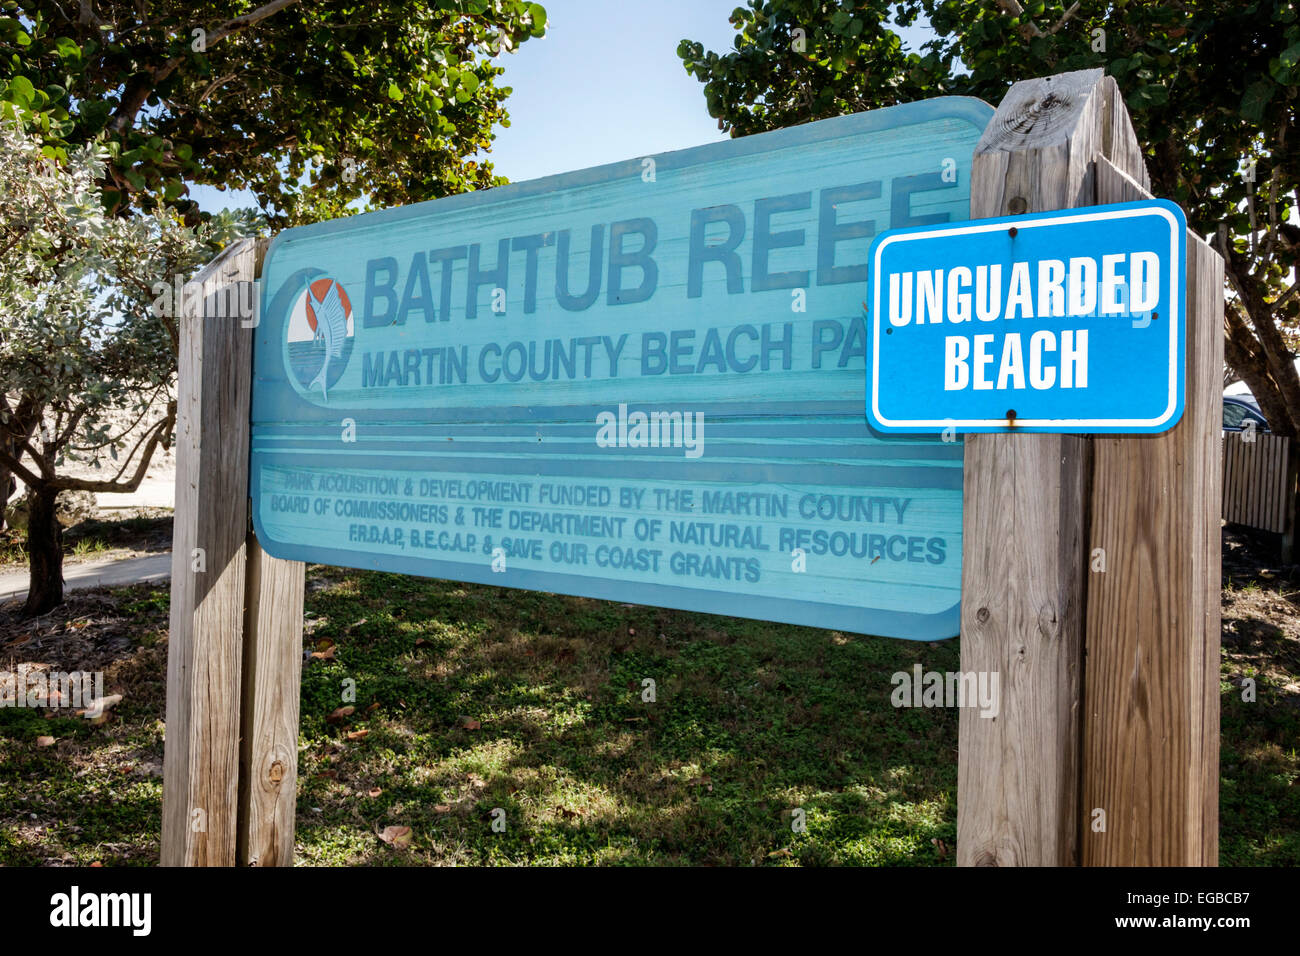 Stuart Florida, Hutchinson Barrier Island, Bathtub Reef Beach, Schild, Logo, unbewacht, Besucher reisen Reise touristischer Tourismus Wahrzeichen Kult Stockfoto